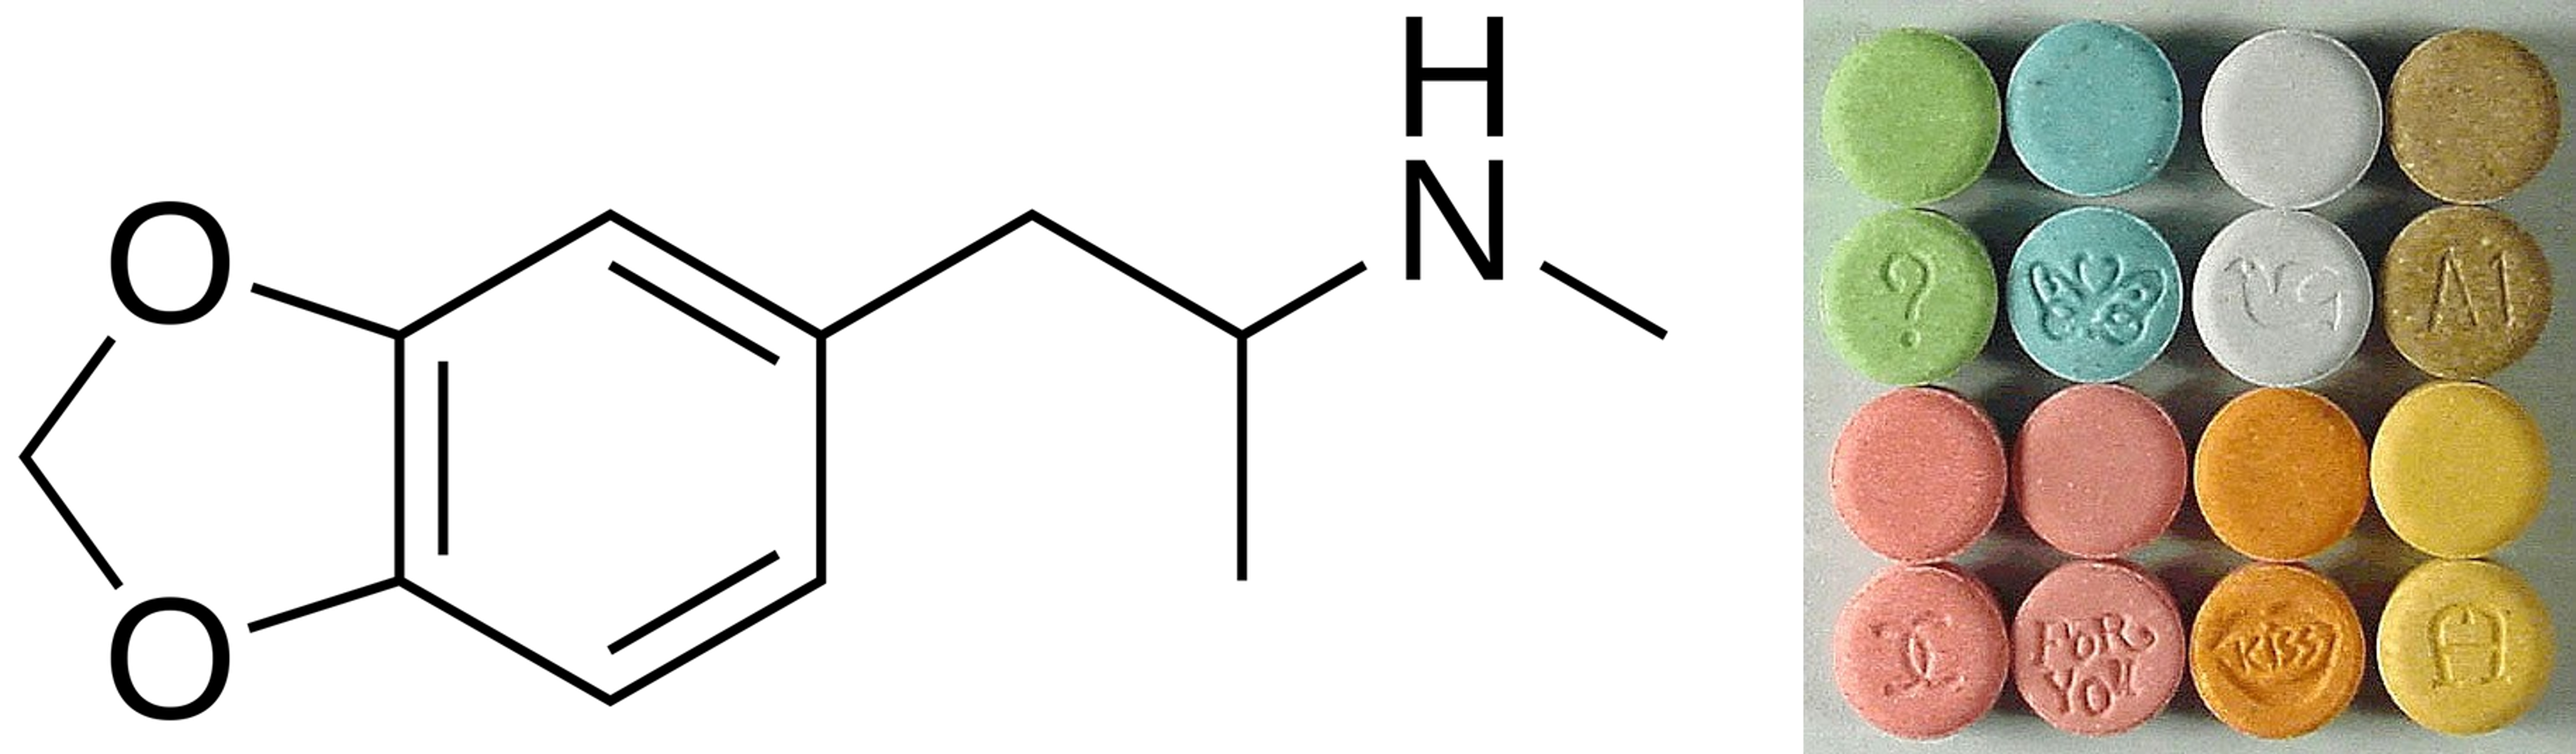 (왼쪽) '엑스터시'로 알려진 3,4-메틸렌디옥시메스암페타민(MDMA)의 분자식입니다. (오른쪽) 시판(?)되는 엑스터시 알약입니다. 이미지 출처: 미국 법무부